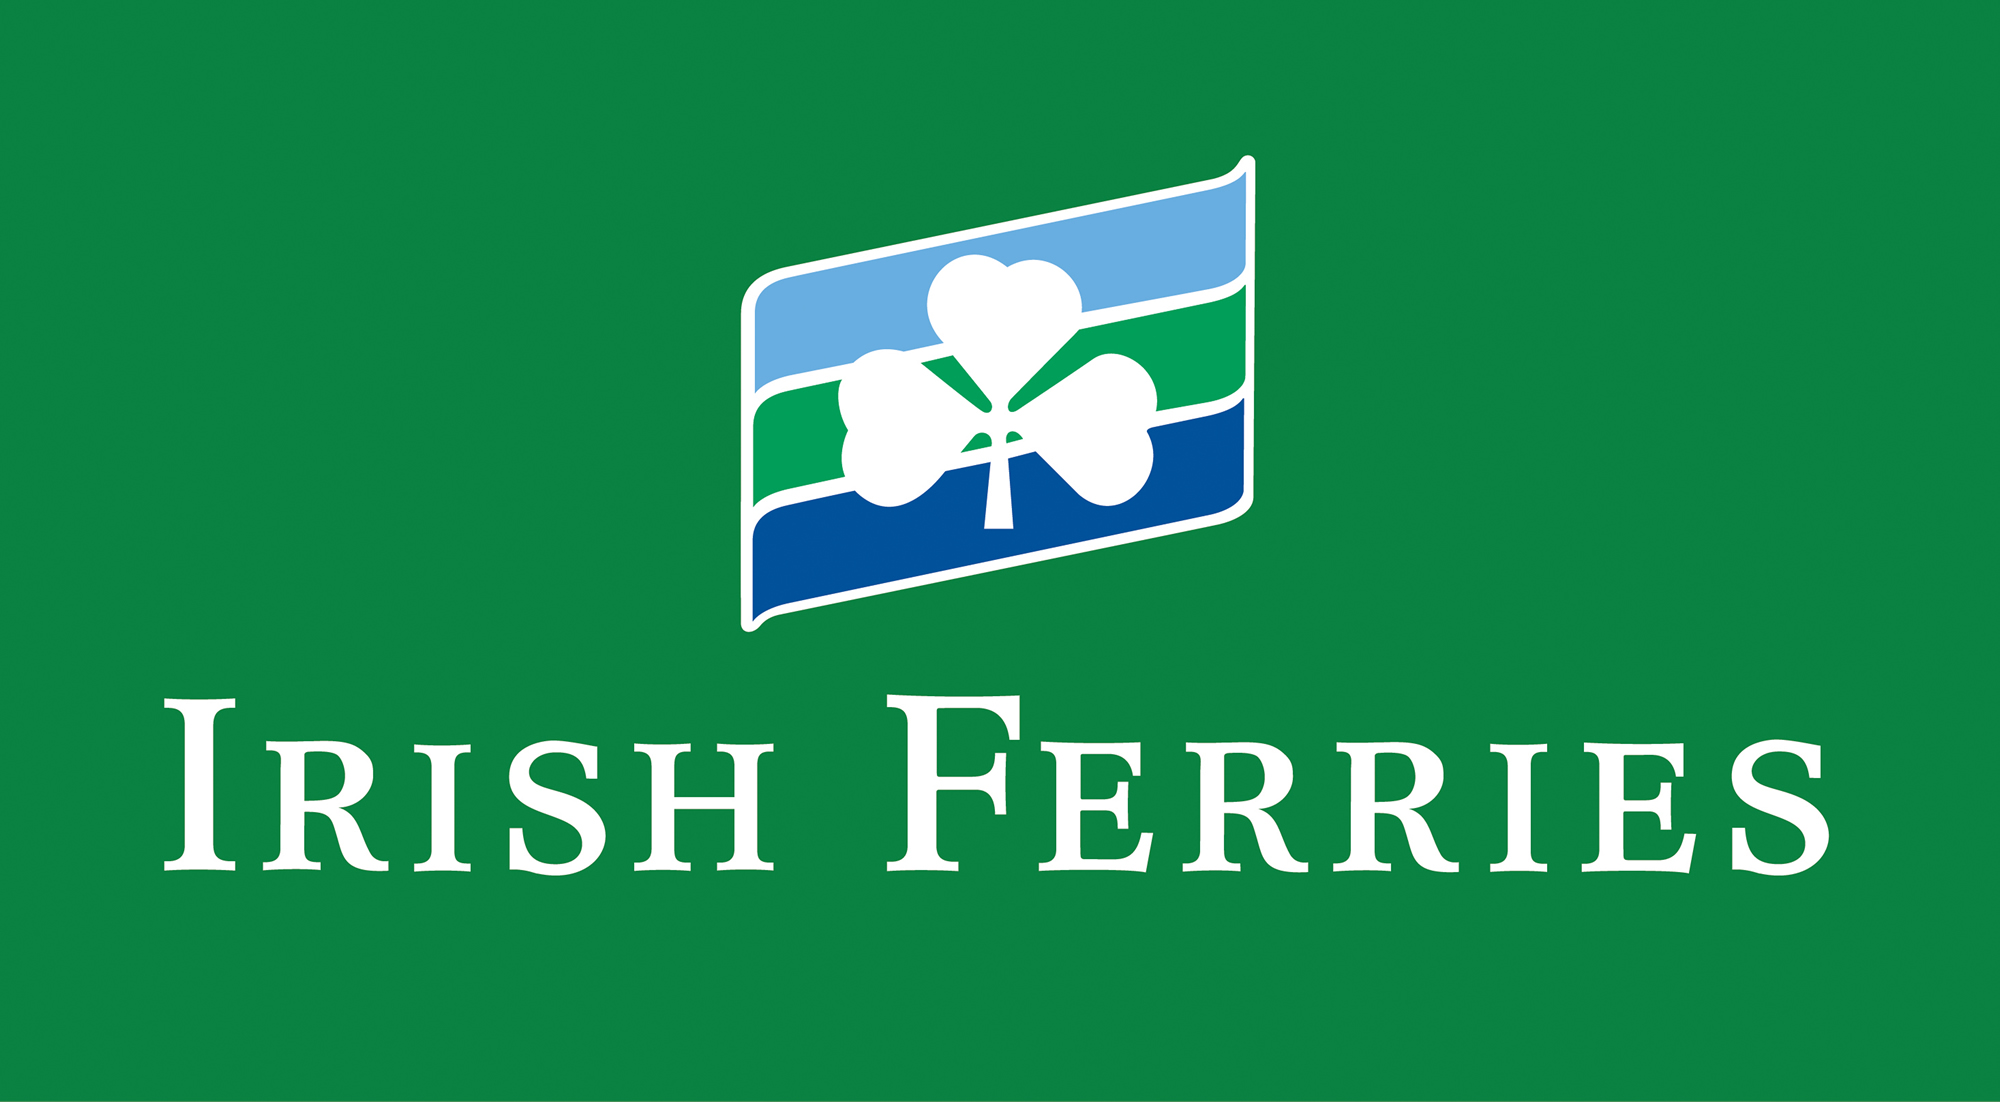 Irish Ferries Discount Code